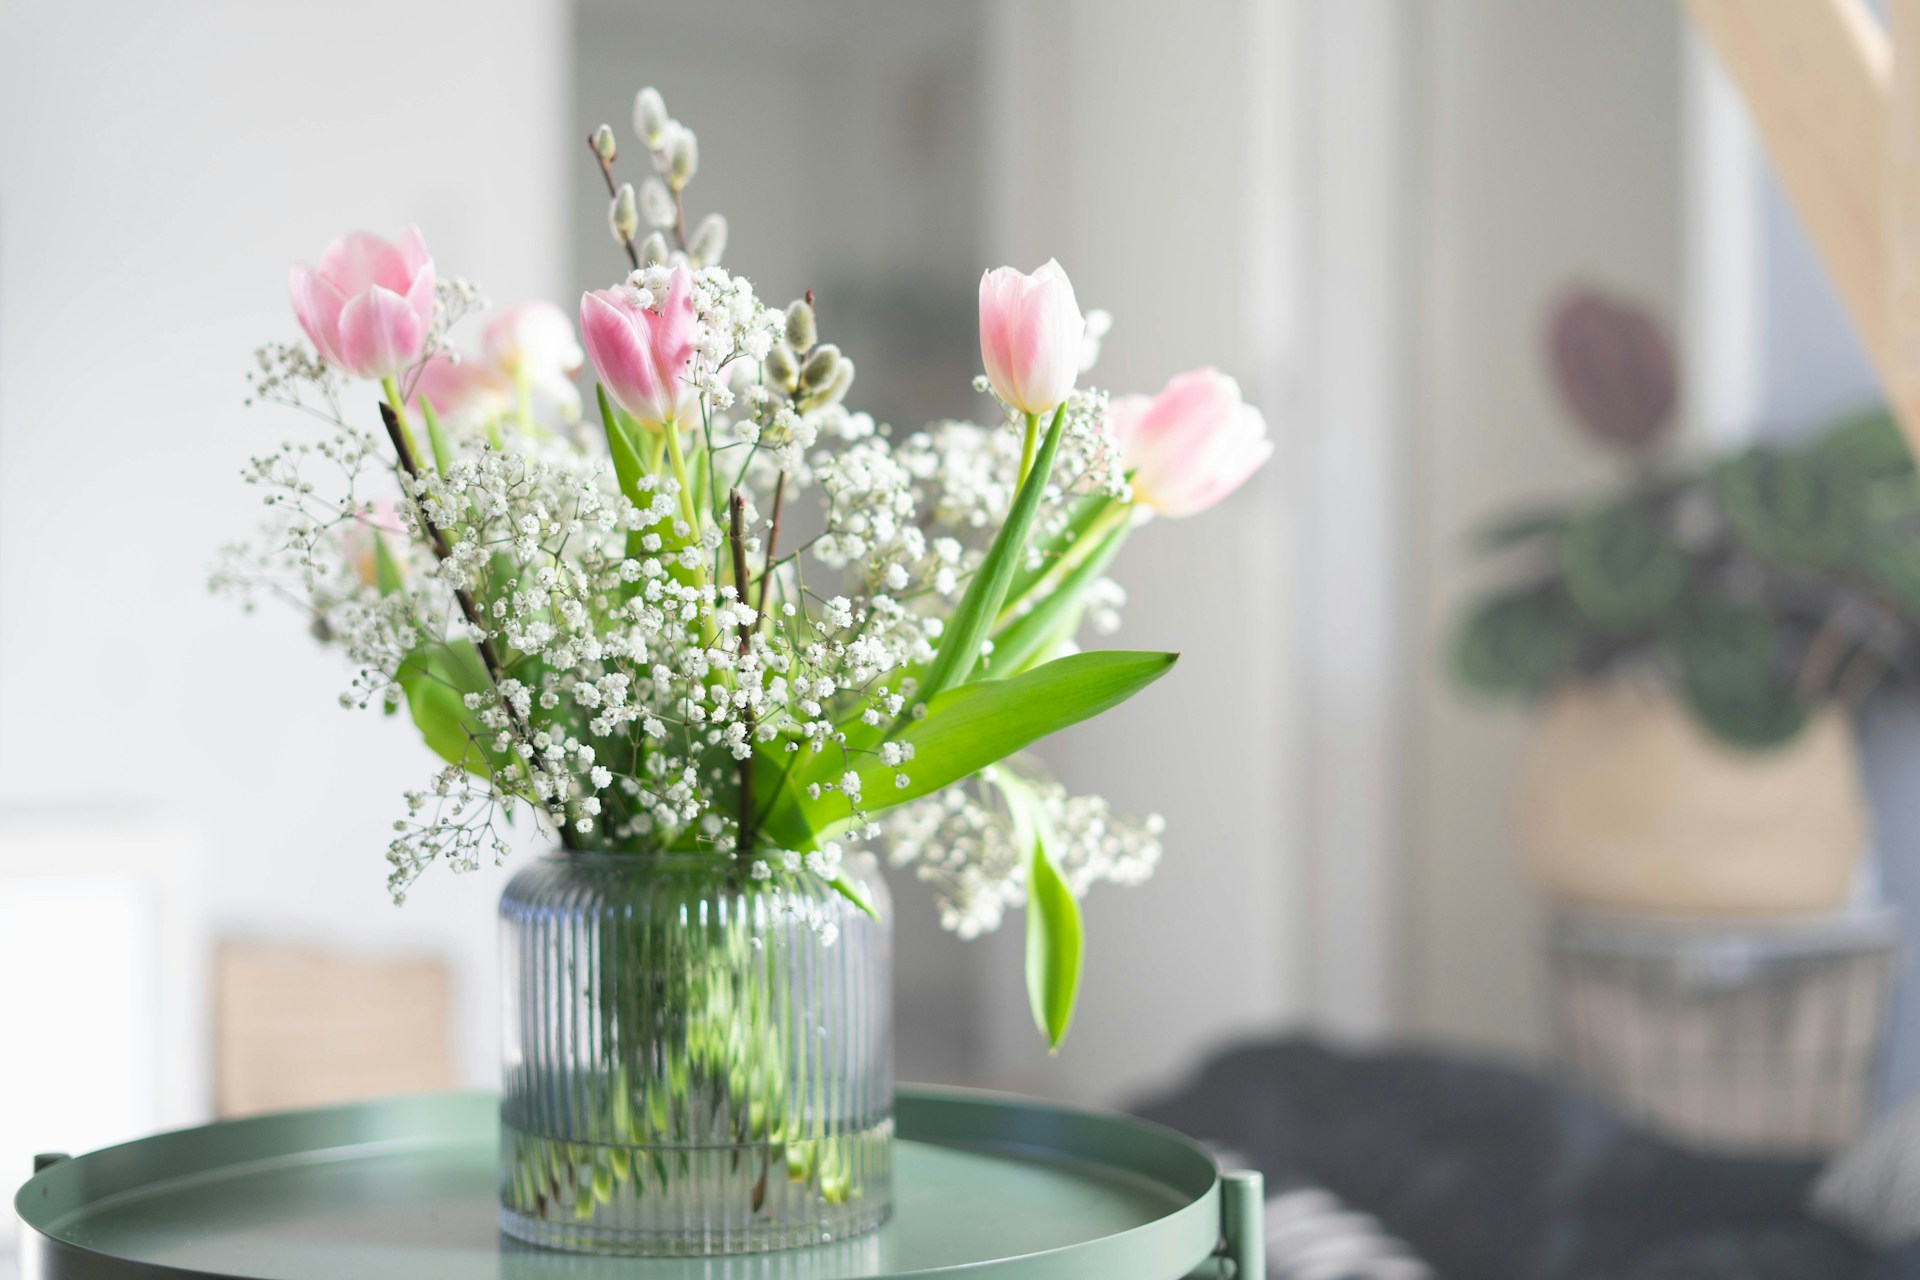 Comment faire durer un bouquet de fleurs plus longtemps ? Les astuces efficaces.